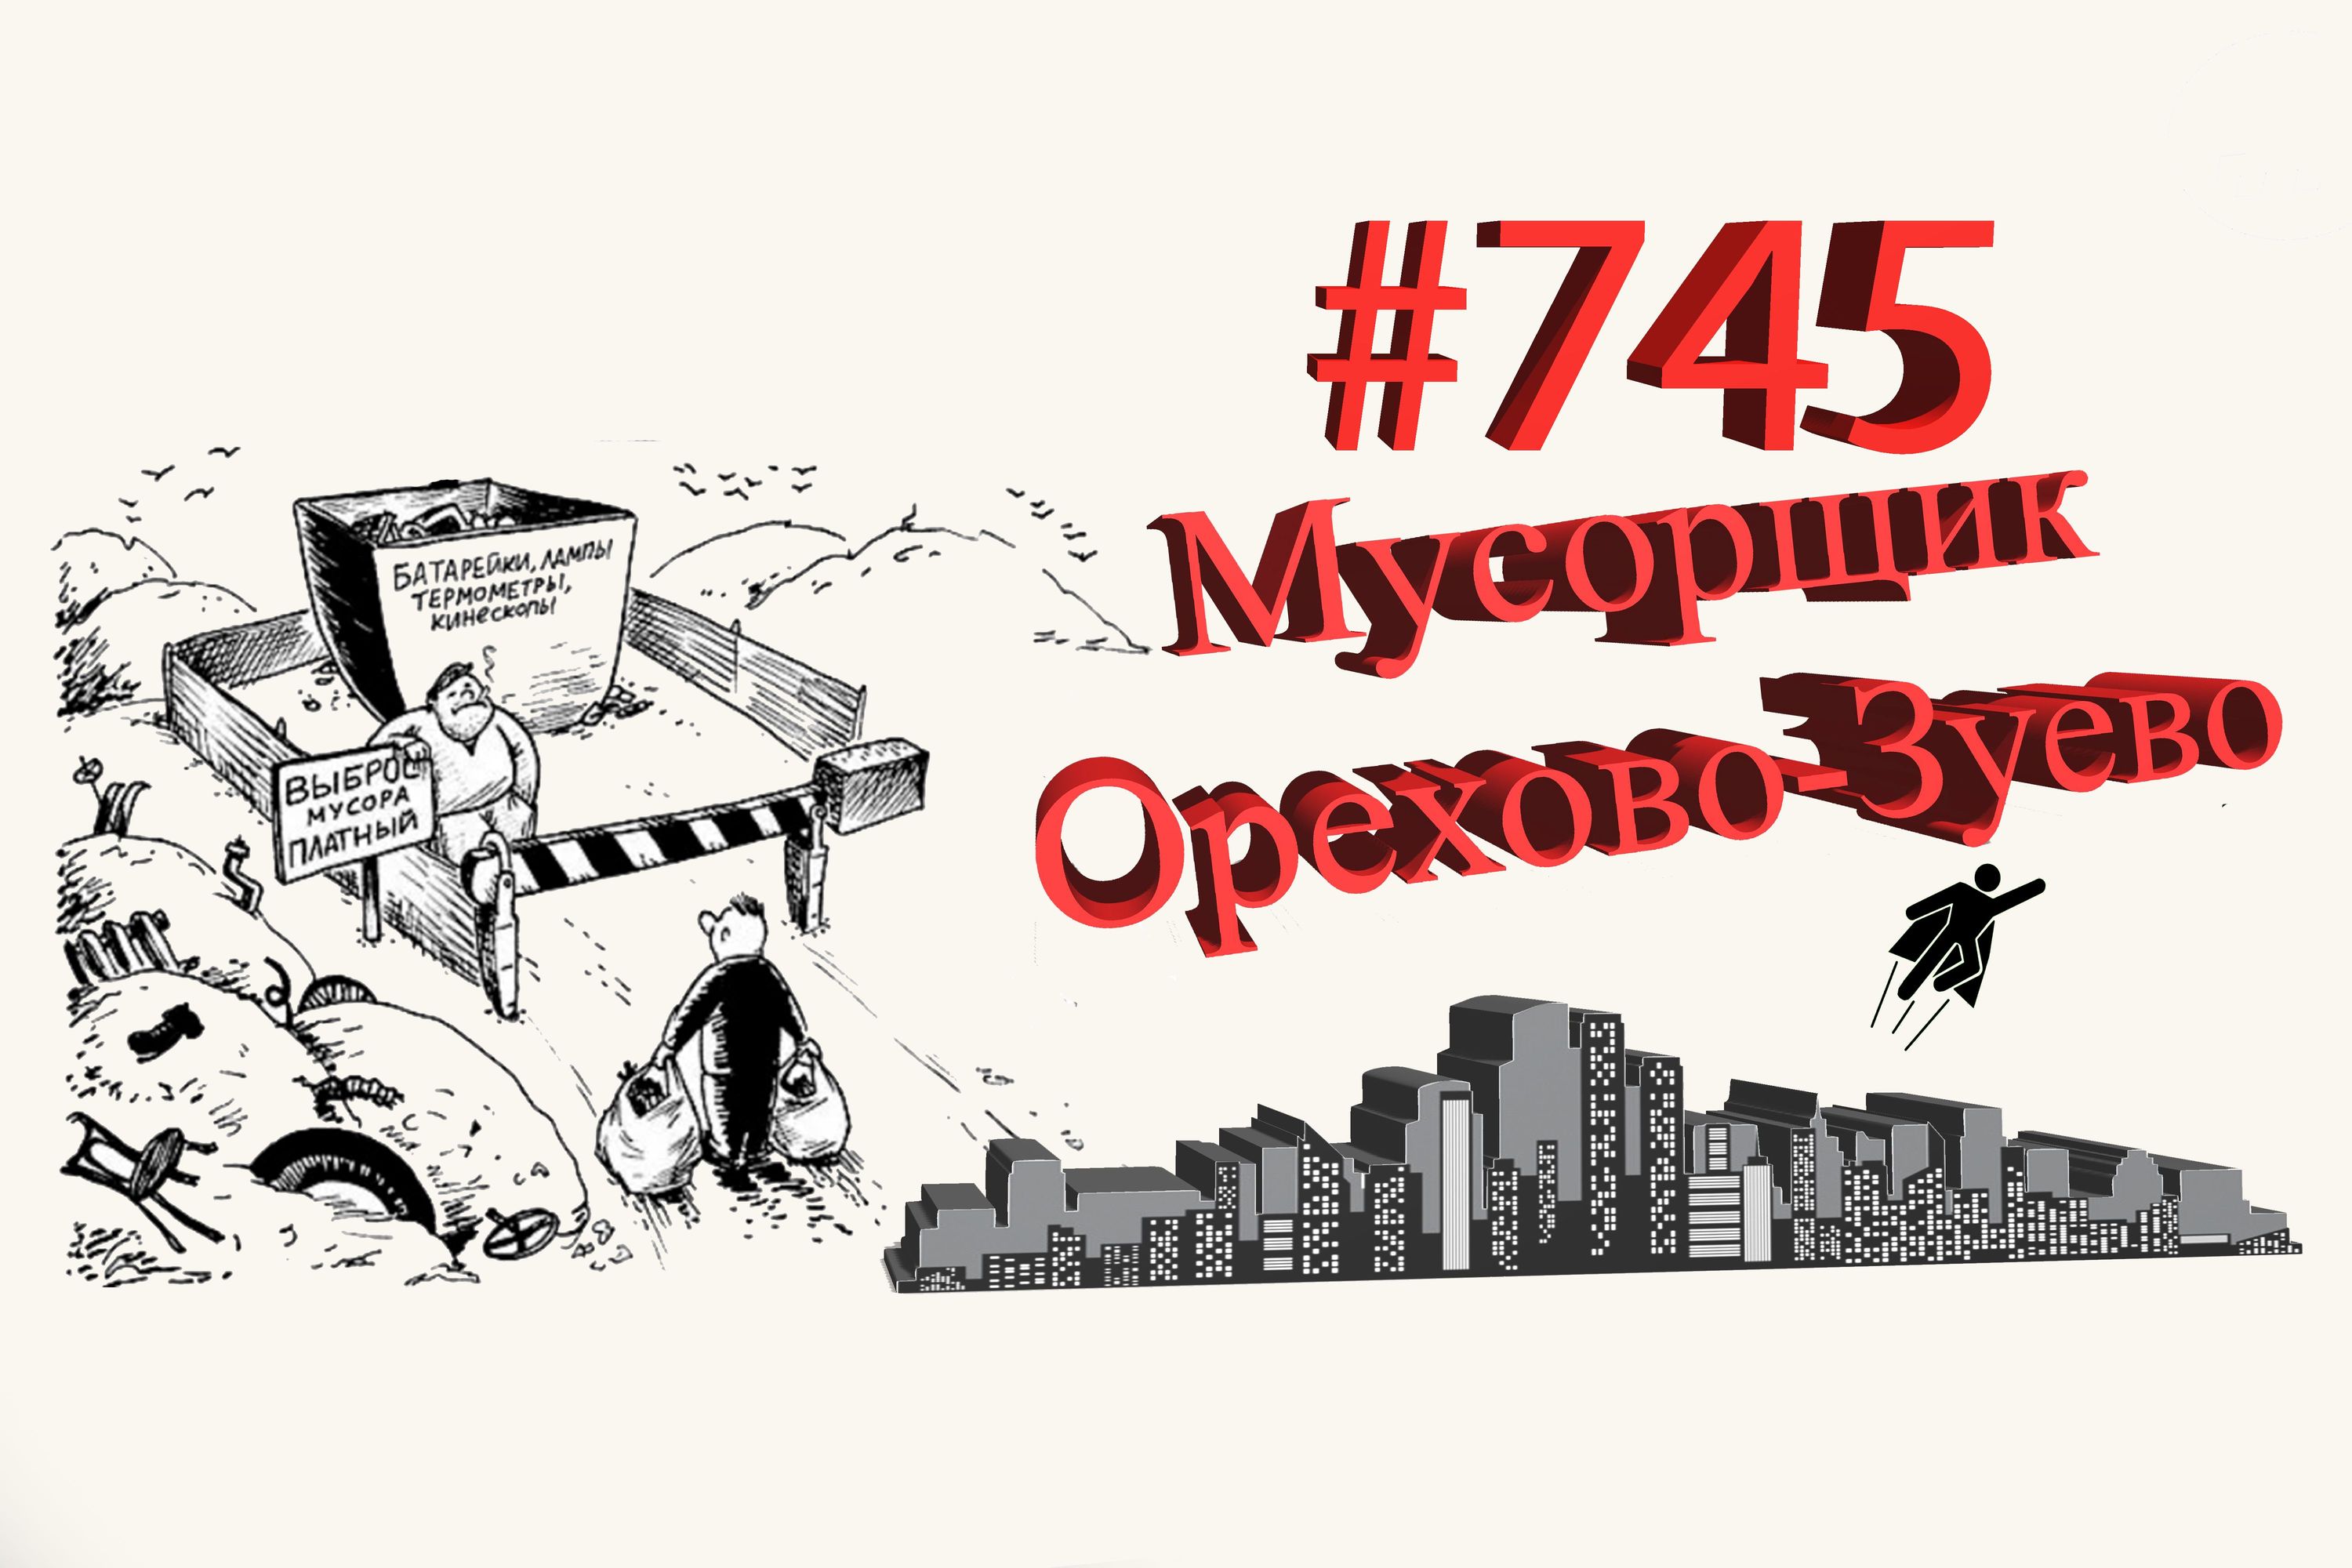 Орехово-Зуево сегодня #745 Подмосковье